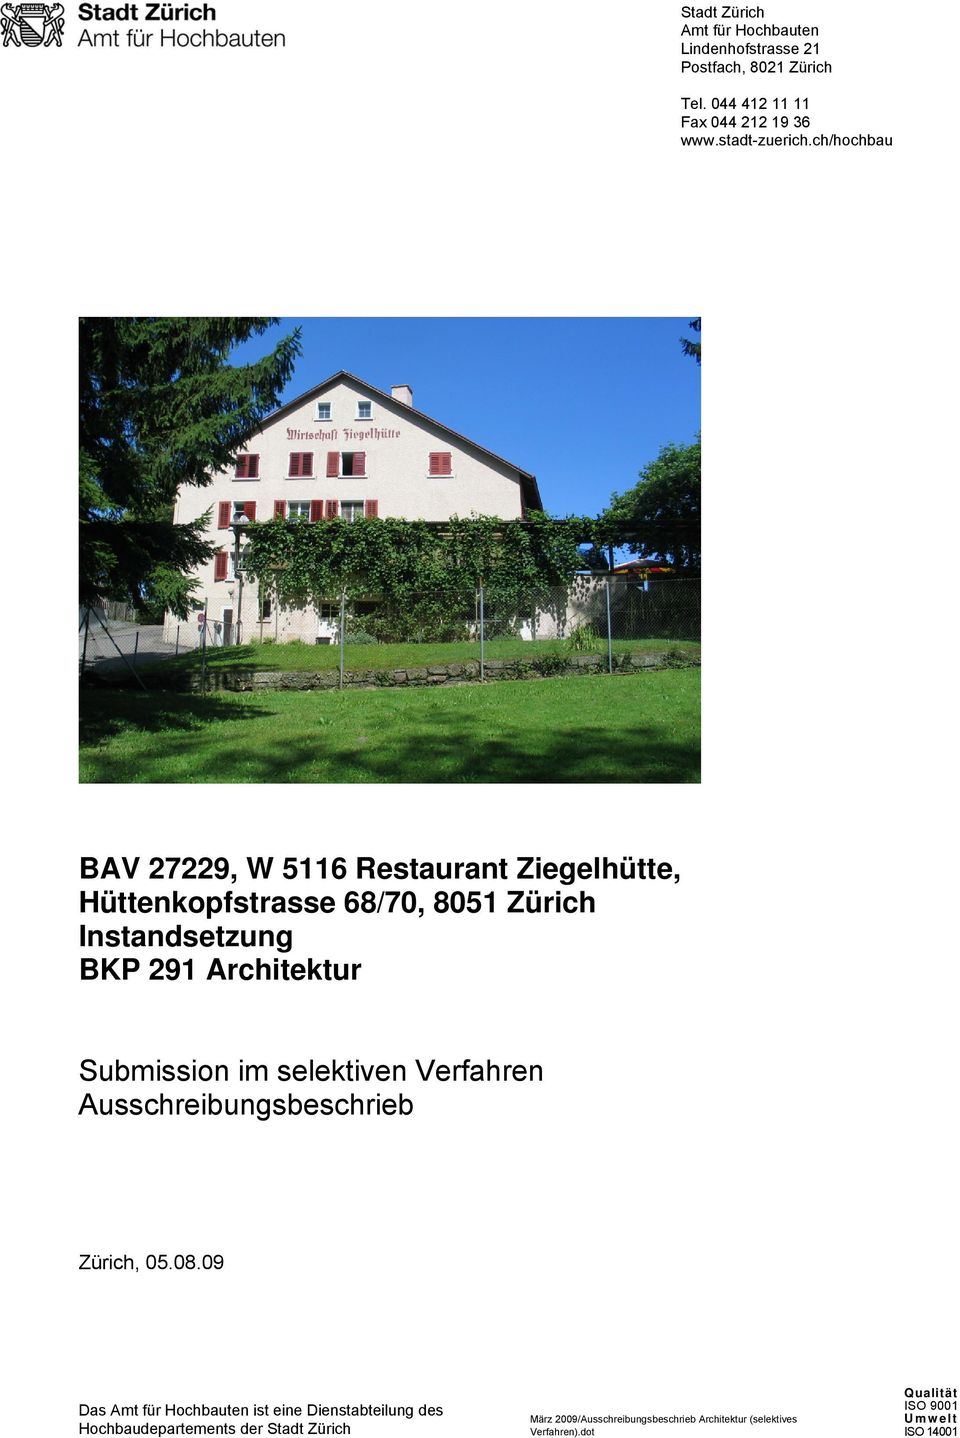 ch/hochbau BAV 27229, W 5116 Restaurant Ziegelhütte, Submission im selektiven Verfahren Ausschreibungsbeschrieb